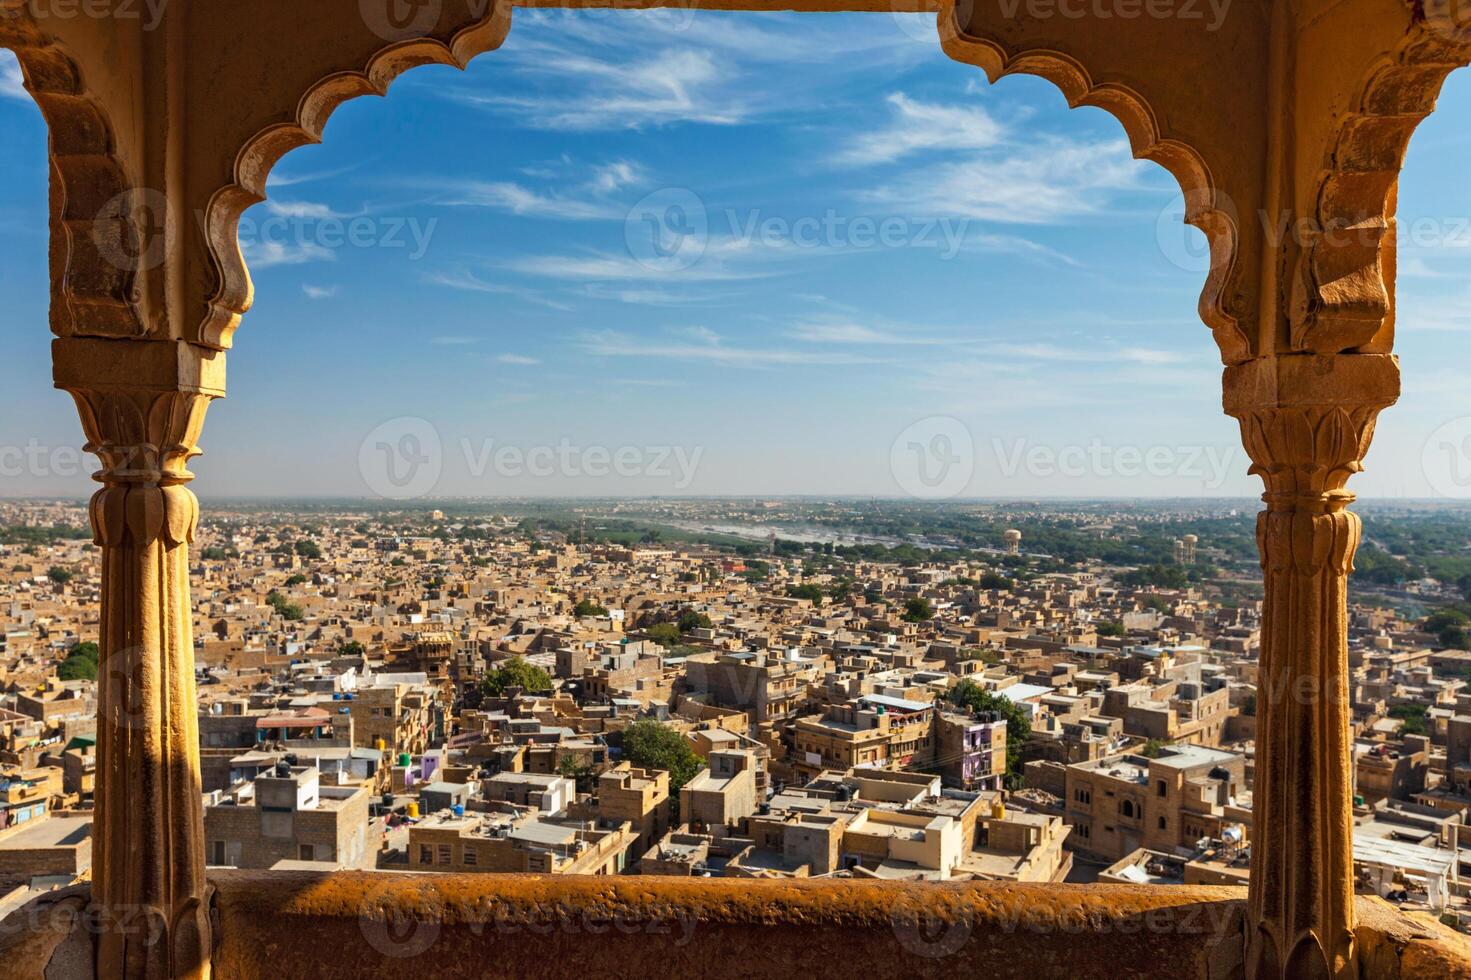 se av jaisalmer stad från jaisalmer fort, rajasthan, Indien foto